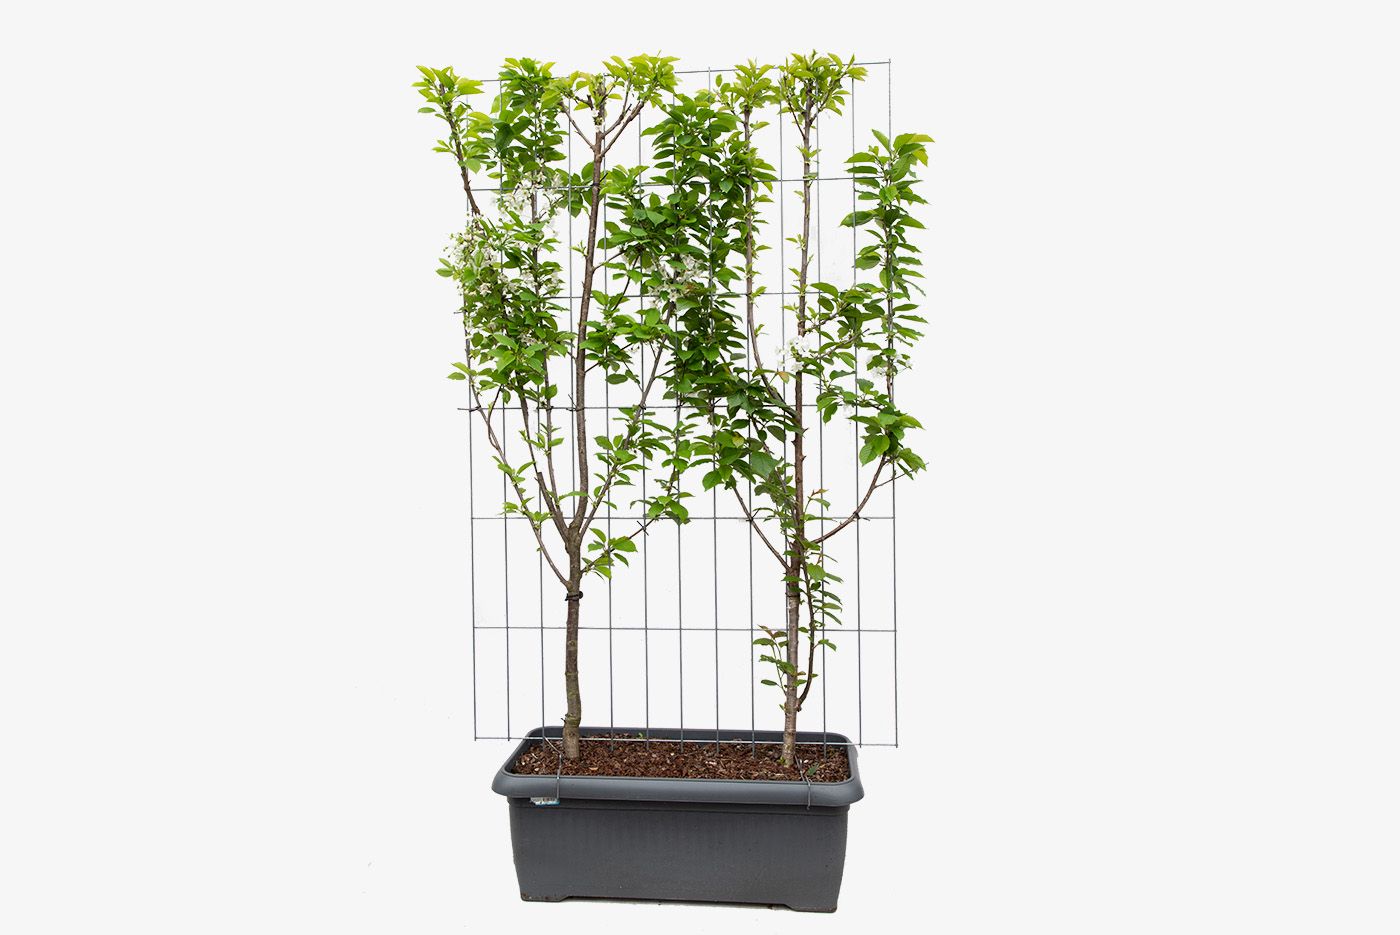 Prunus avium 'Duo-kers' (zoet) kant en klaar haag 120 x 180 cm, C90